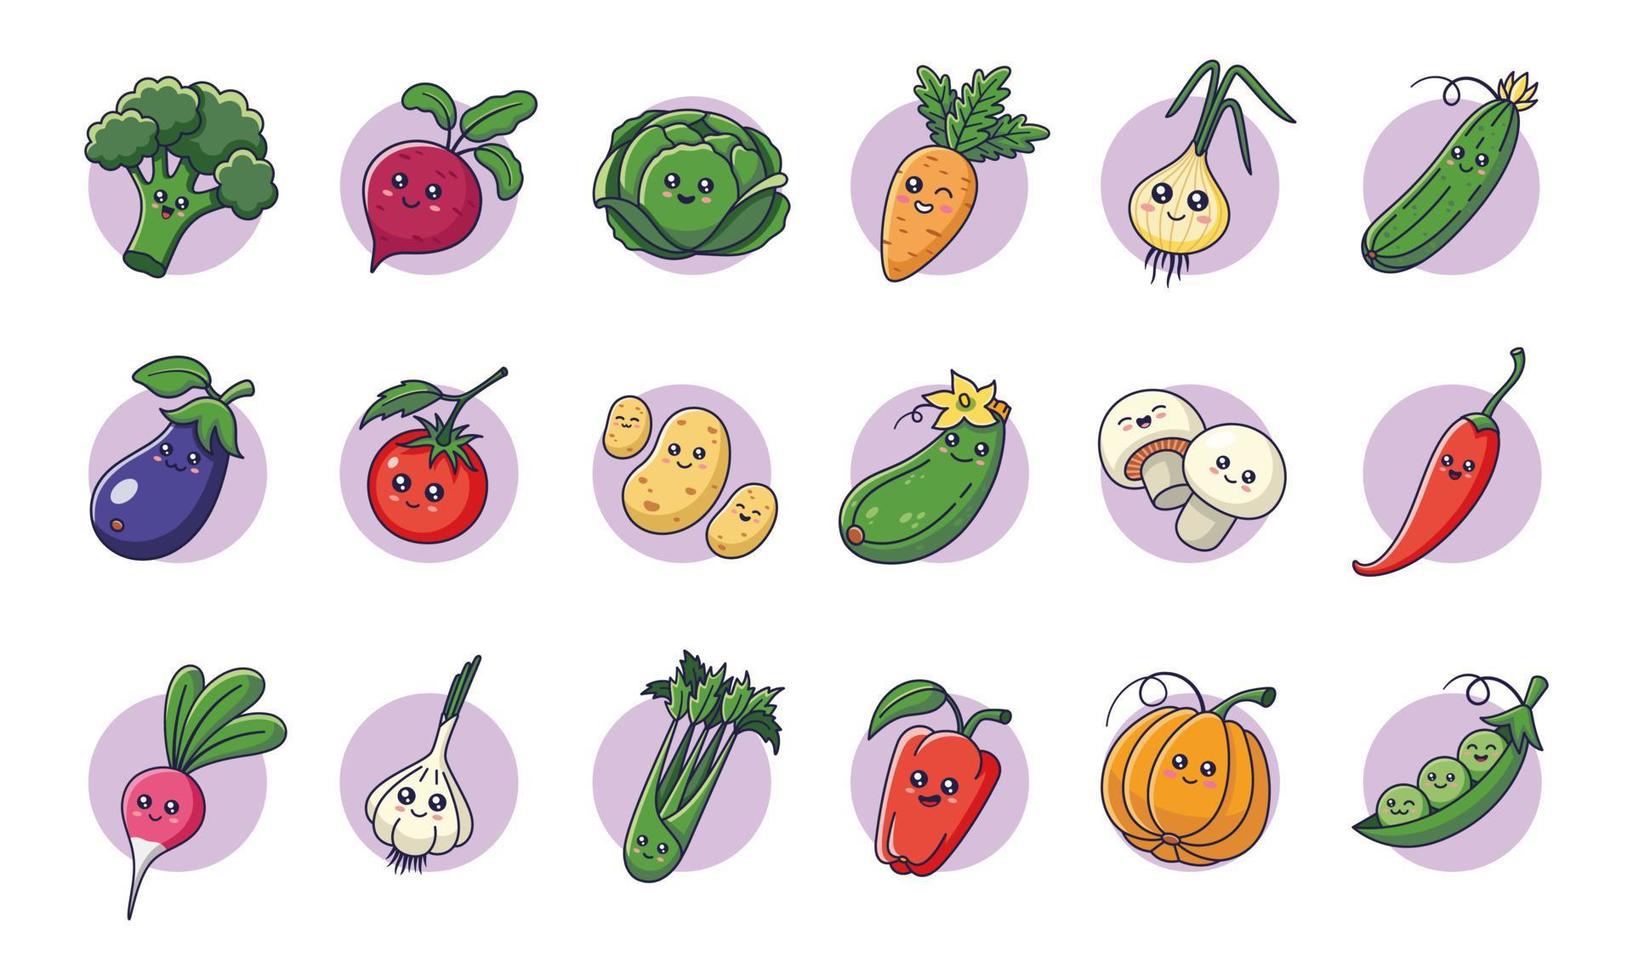 légumes kawaii mignons dans un style dessin animé. collection de personnages de légumes. icônes de légumes, autocollants, mascottes. vecteur